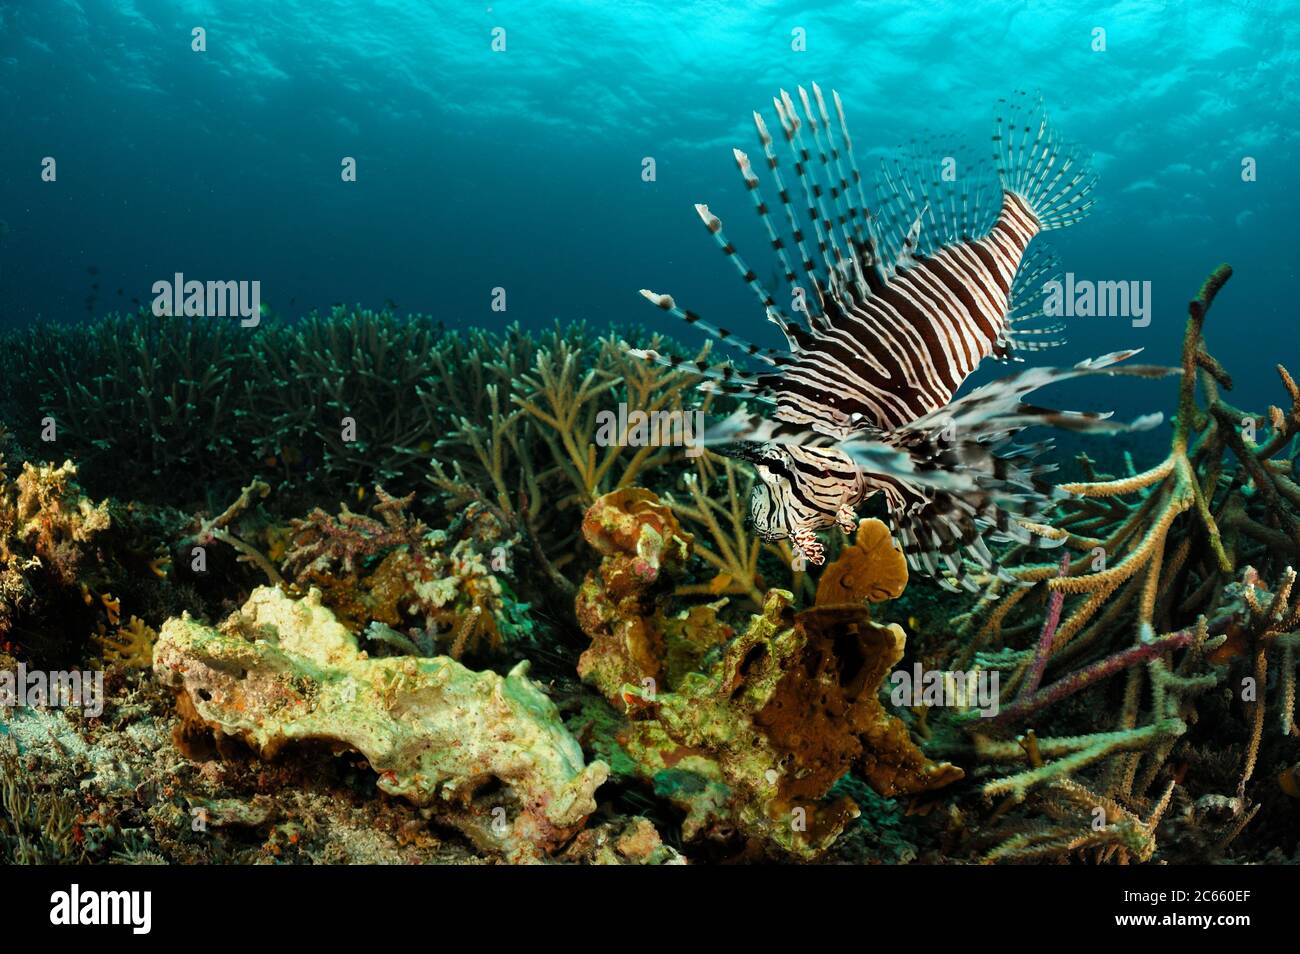 Lionfish rouge (Pterois volitans) Raja Ampat, Papouasie occidentale, Indonésie, Océan Pacifique Banque D'Images